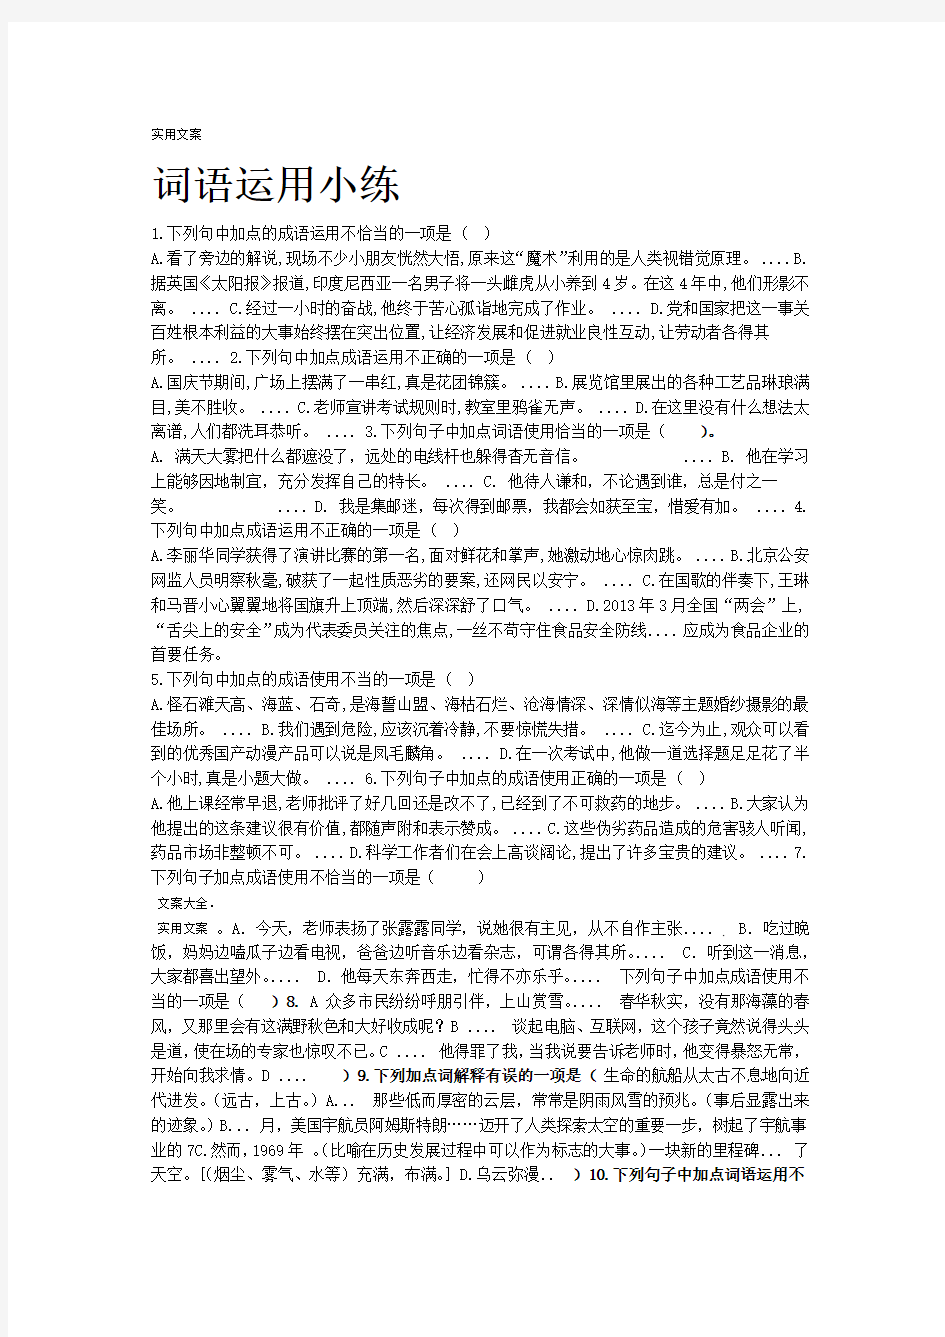 人教版部编教材新版初中语文词语成语运用题总汇编含问题详解